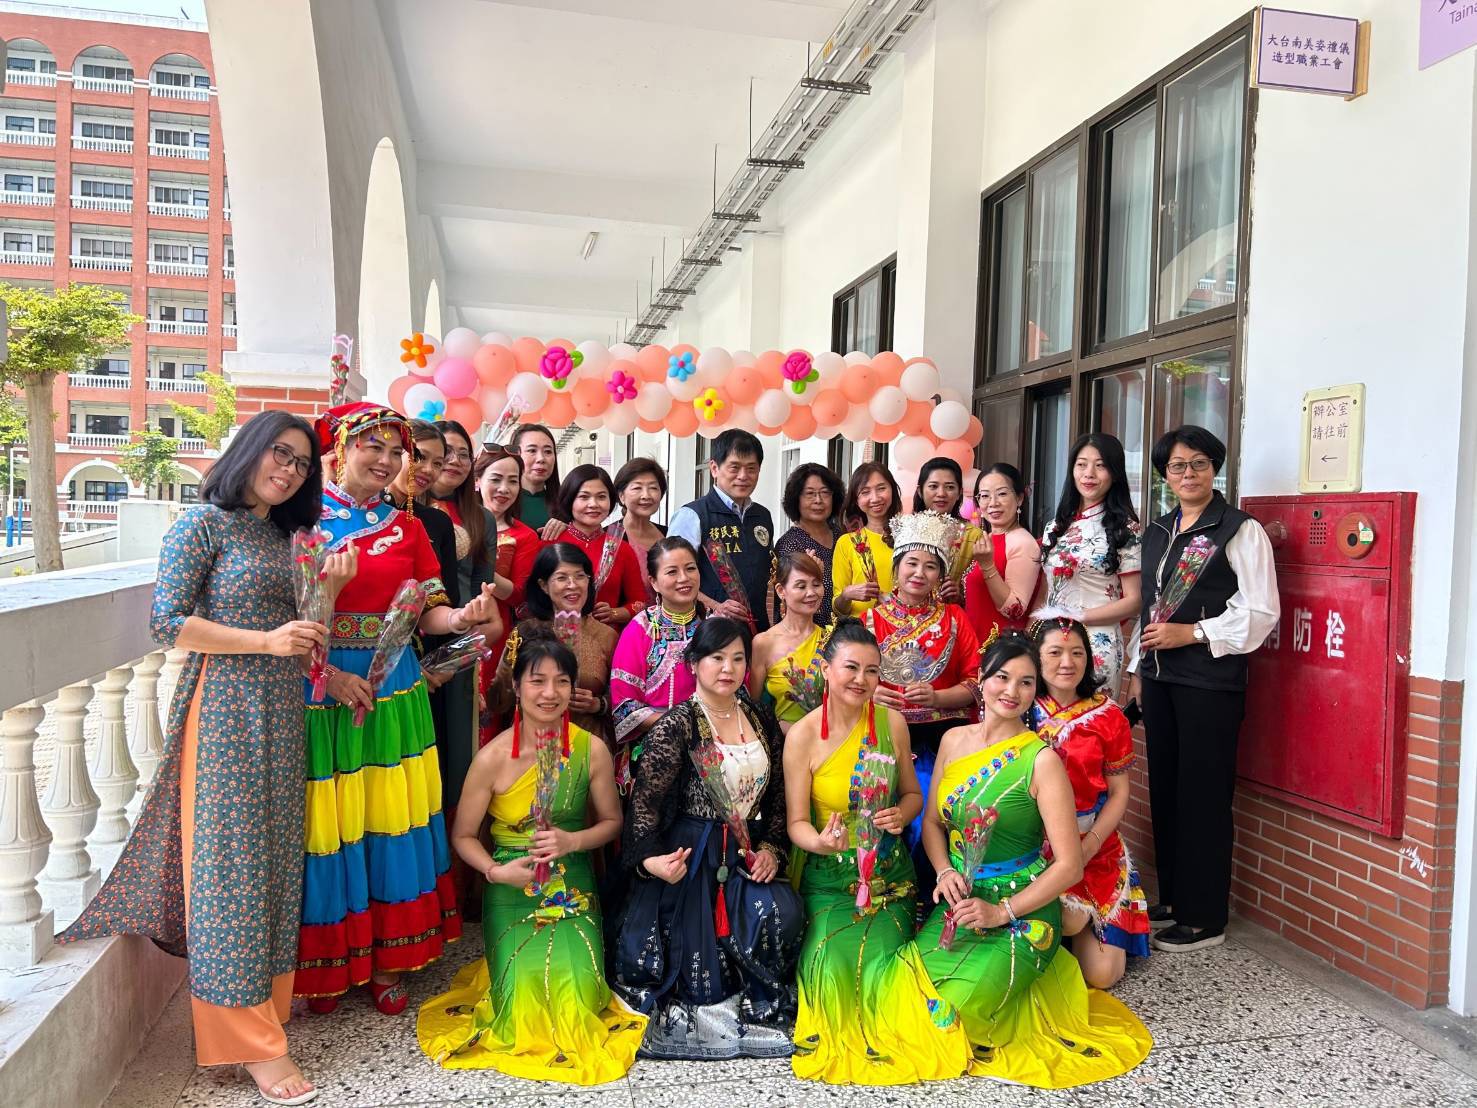  臺南移民署母親節辦理新住民彩妝體驗活動 感謝媽媽辛勞